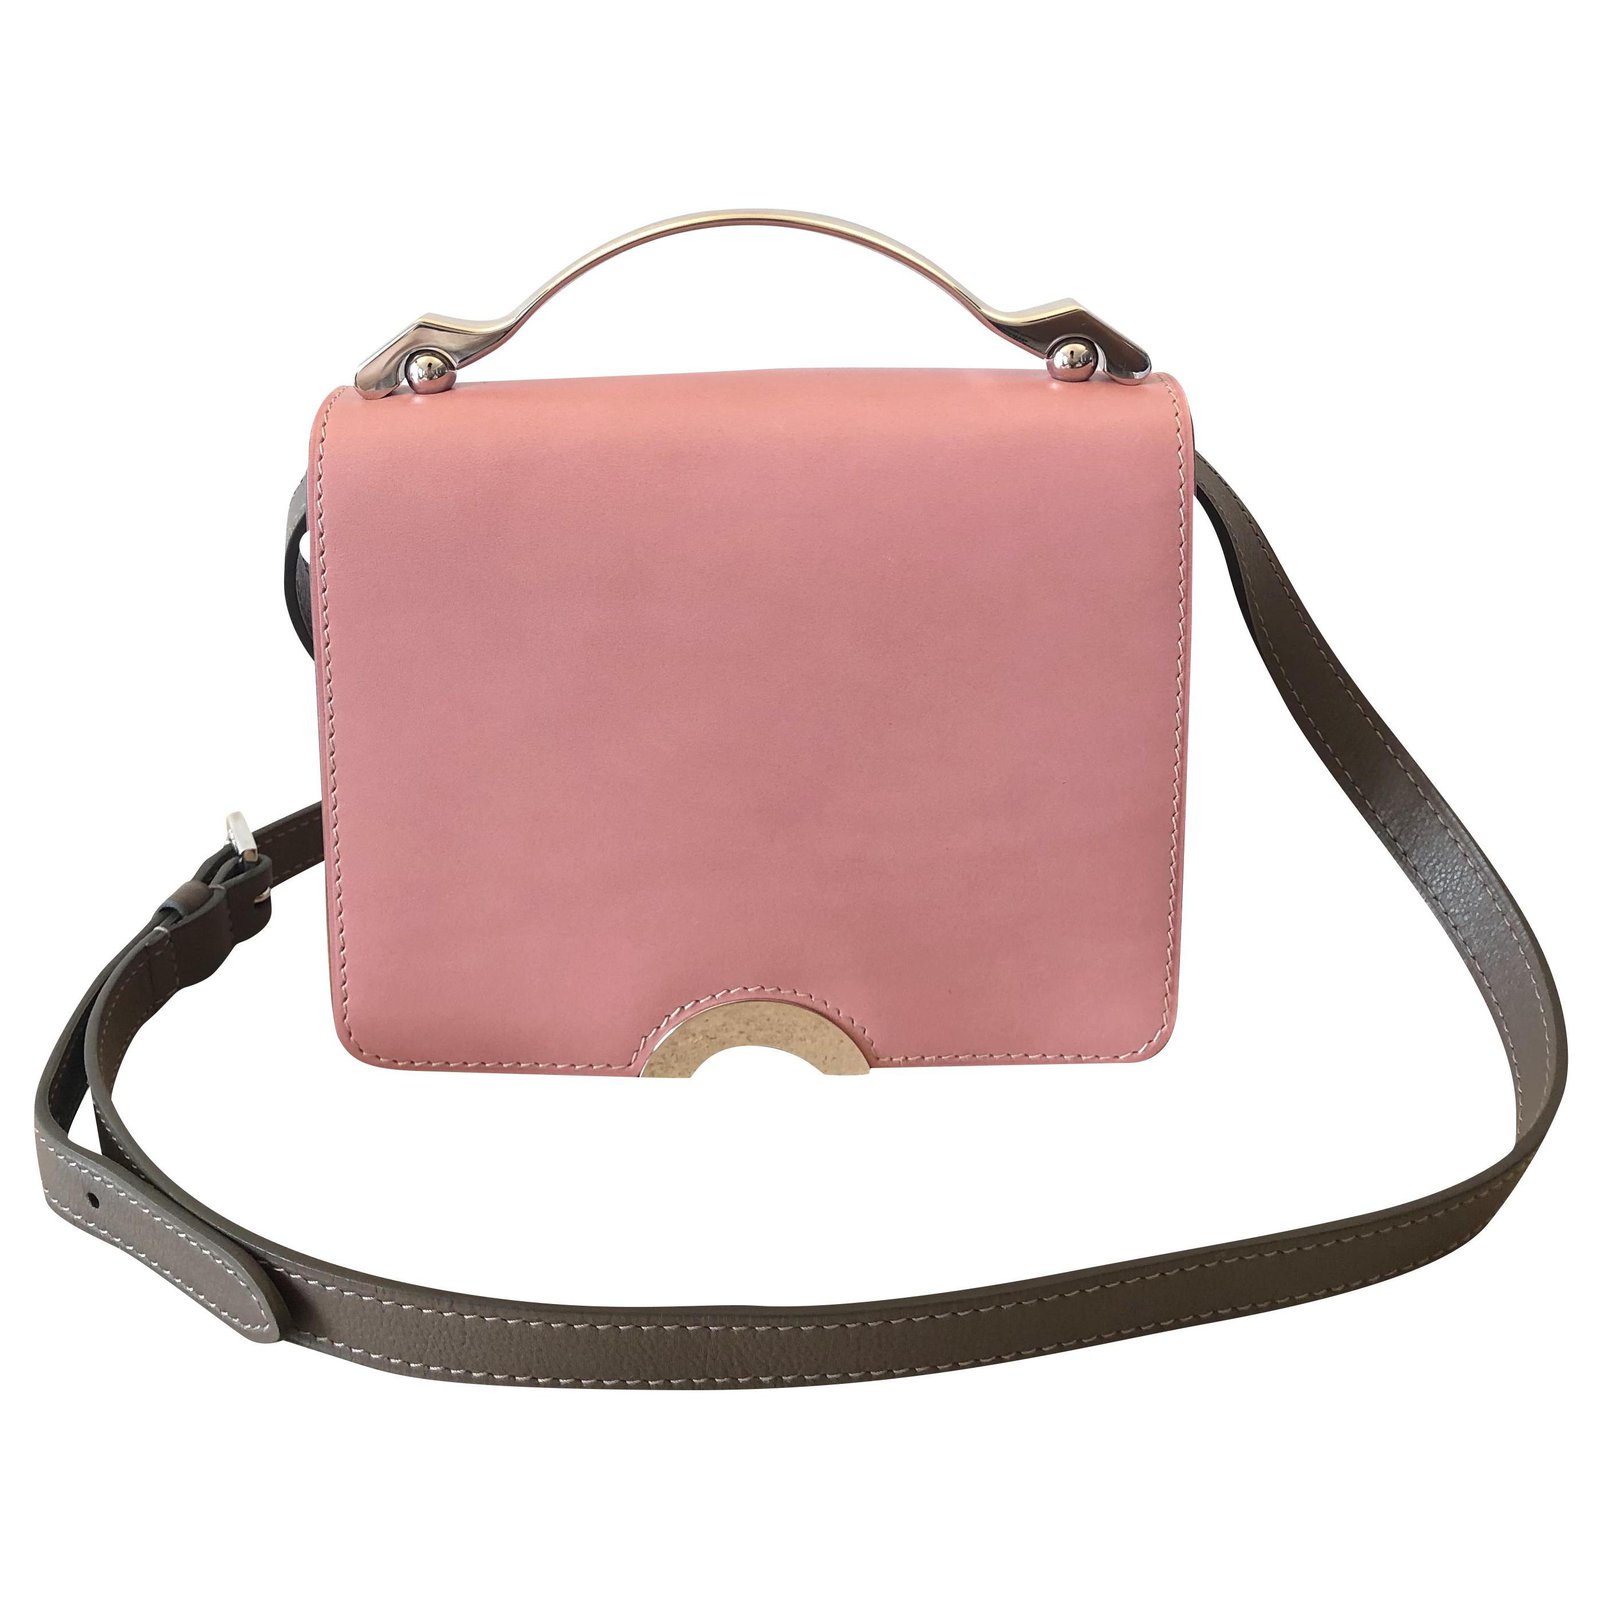 MOYNAT Handbags Moynat Paris Leather For Female for Women